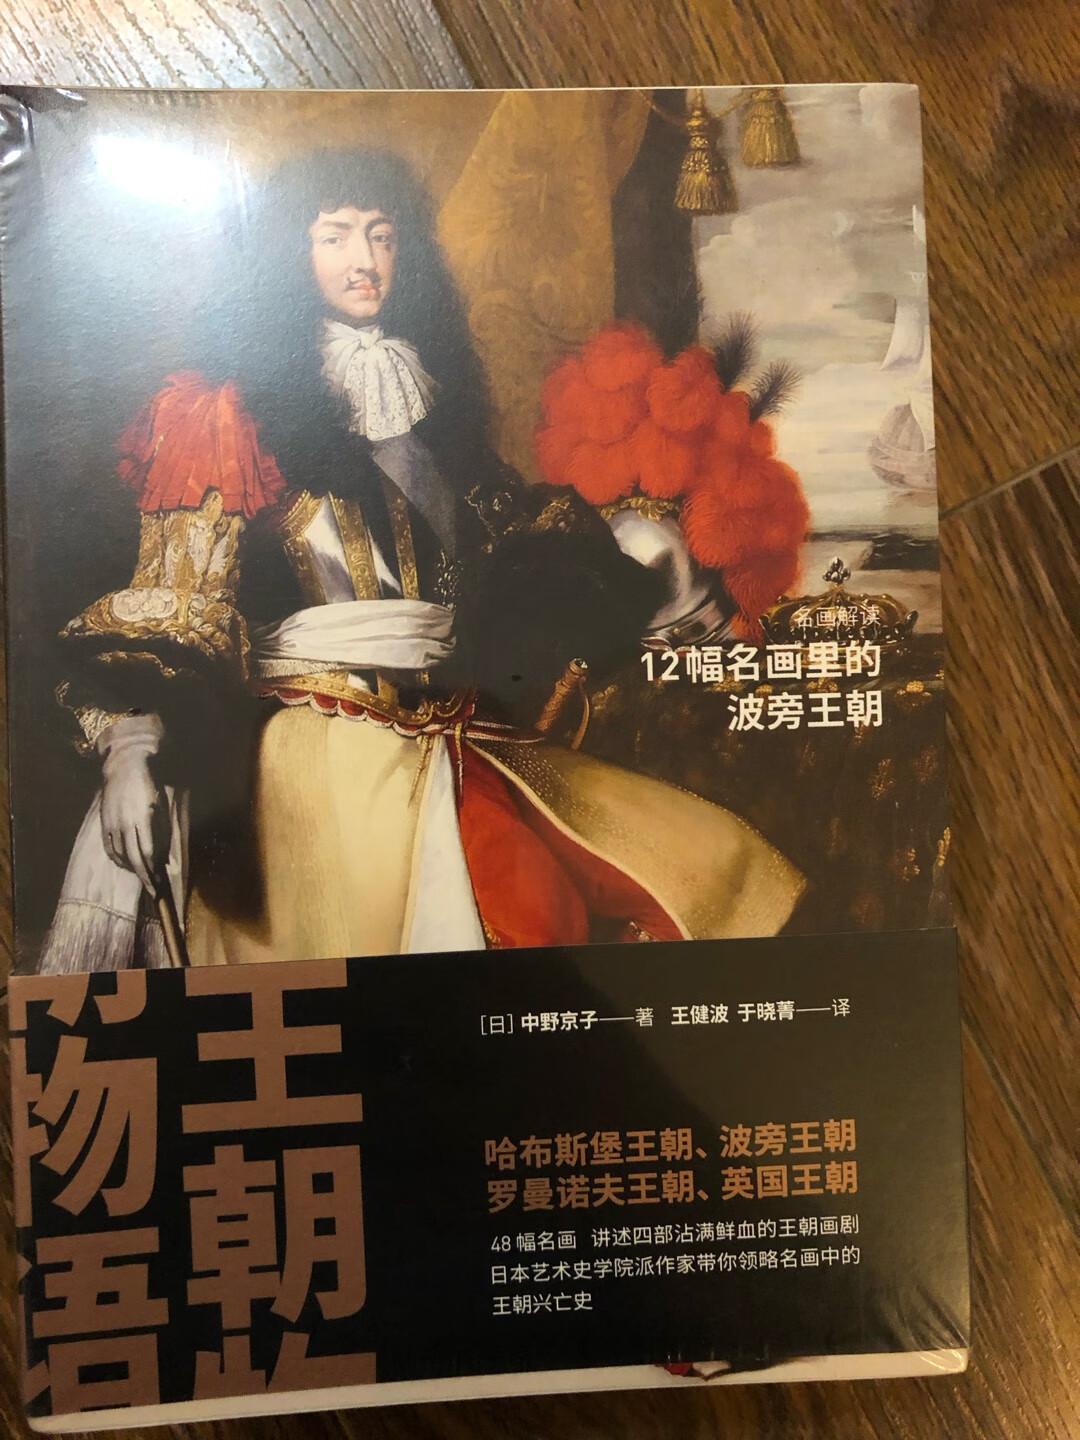 非常适合喜欢历史同时也喜欢绘画的人读，中野京子每本书都可以很愉快地读下去